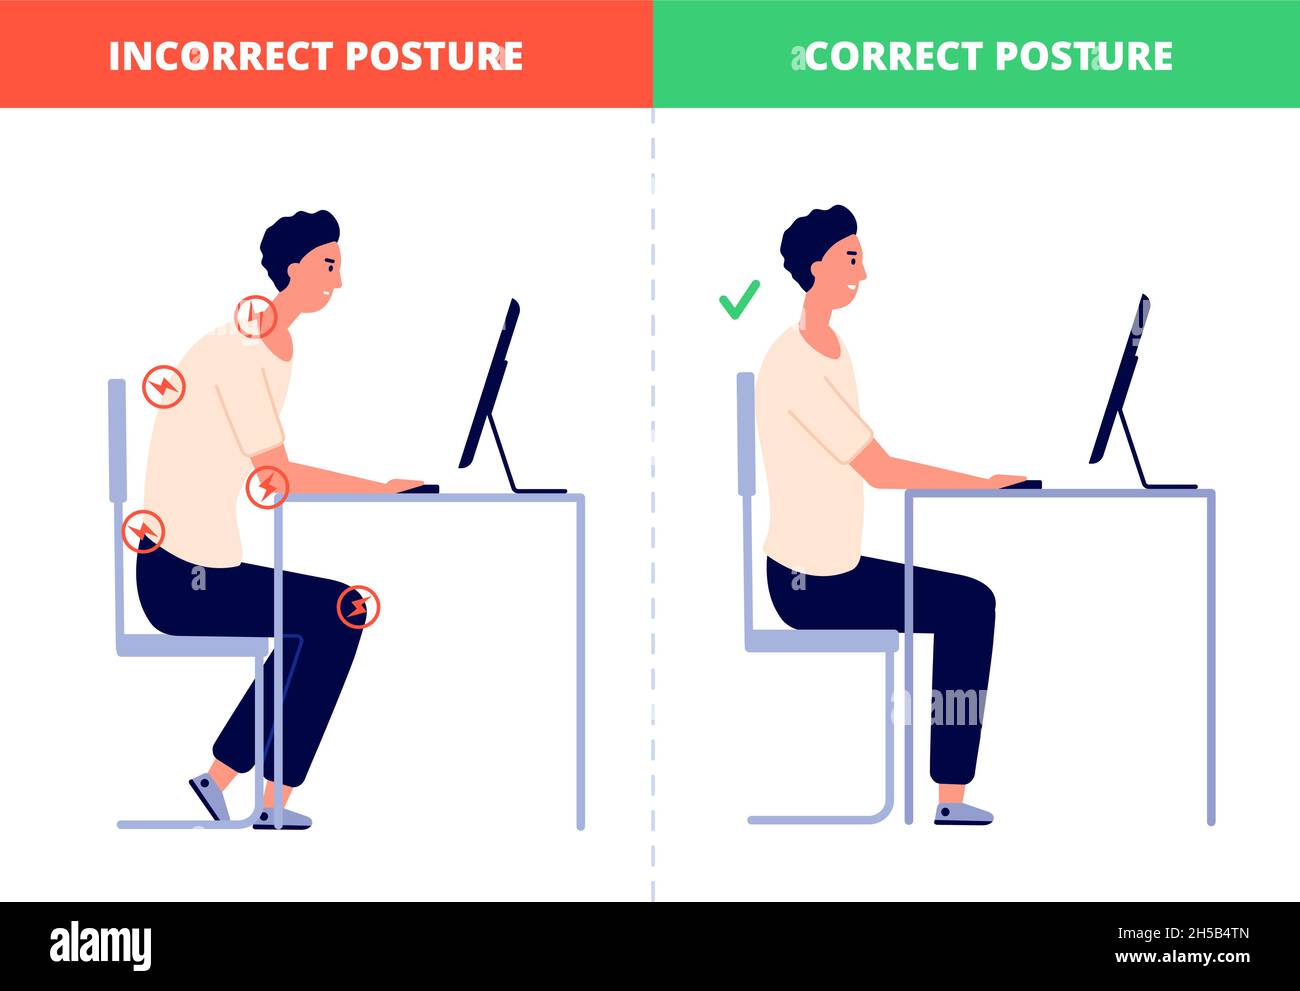 Korrektes Sitzen. Computerhaltung, Ergonomie im Büro am Schreibtisch. Richtige Position ohne Nacken- oder Rückenschmerzen für ein gesundes Wirbelsäulenkonzept Stock Vektor